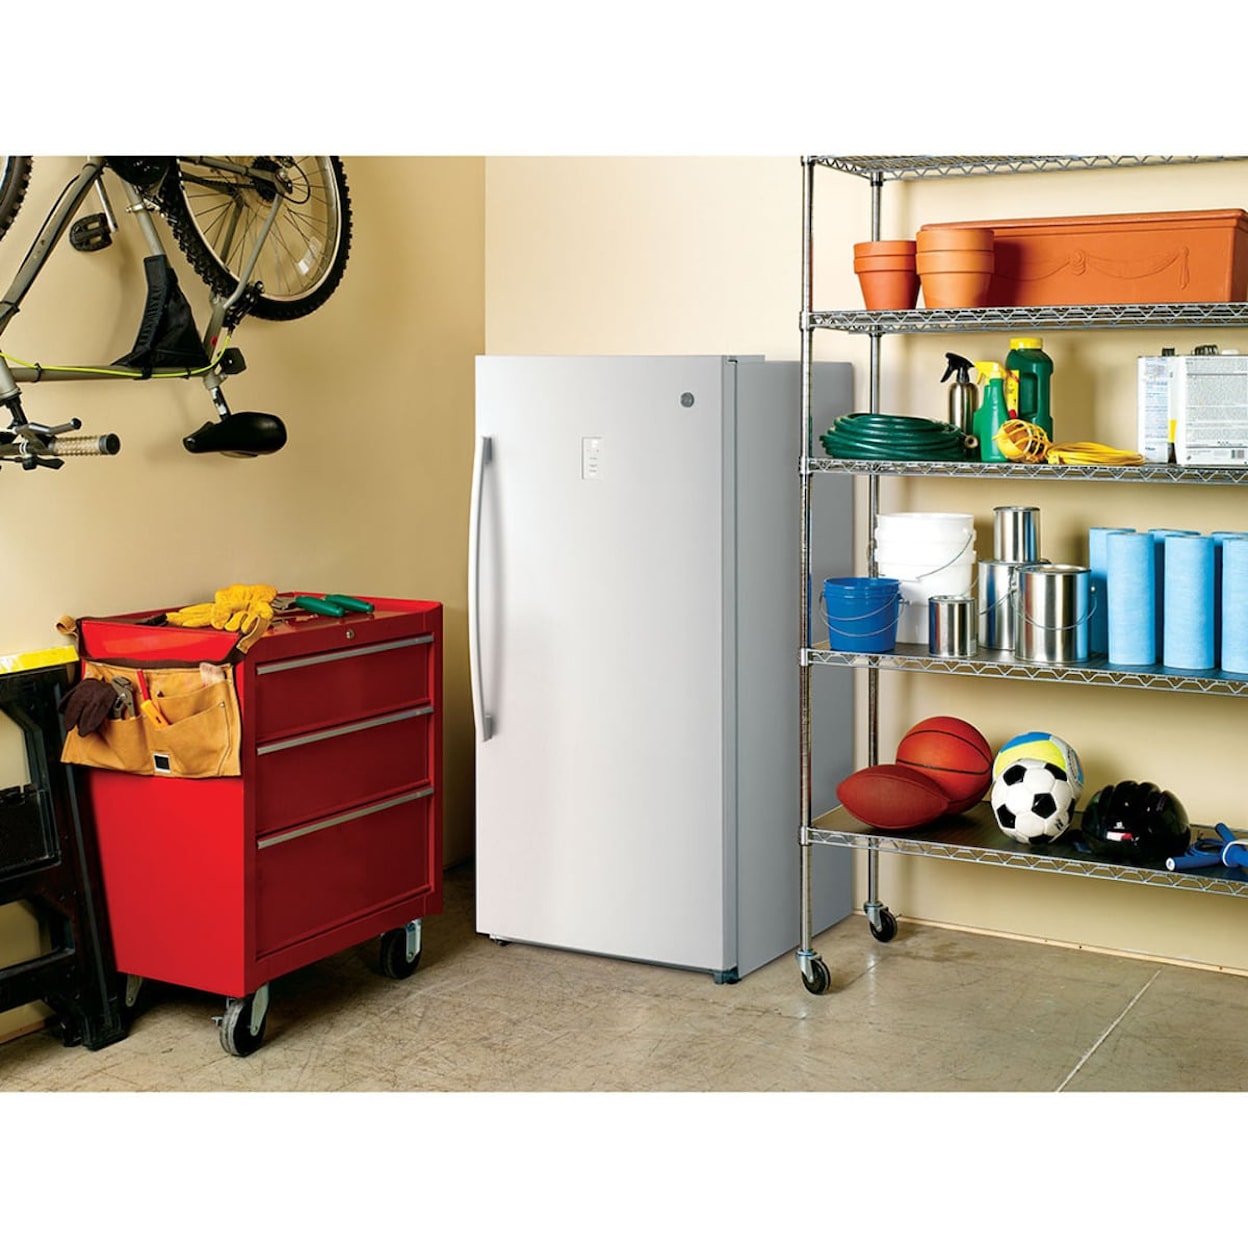 GE Appliances Freezer Upright Freezers